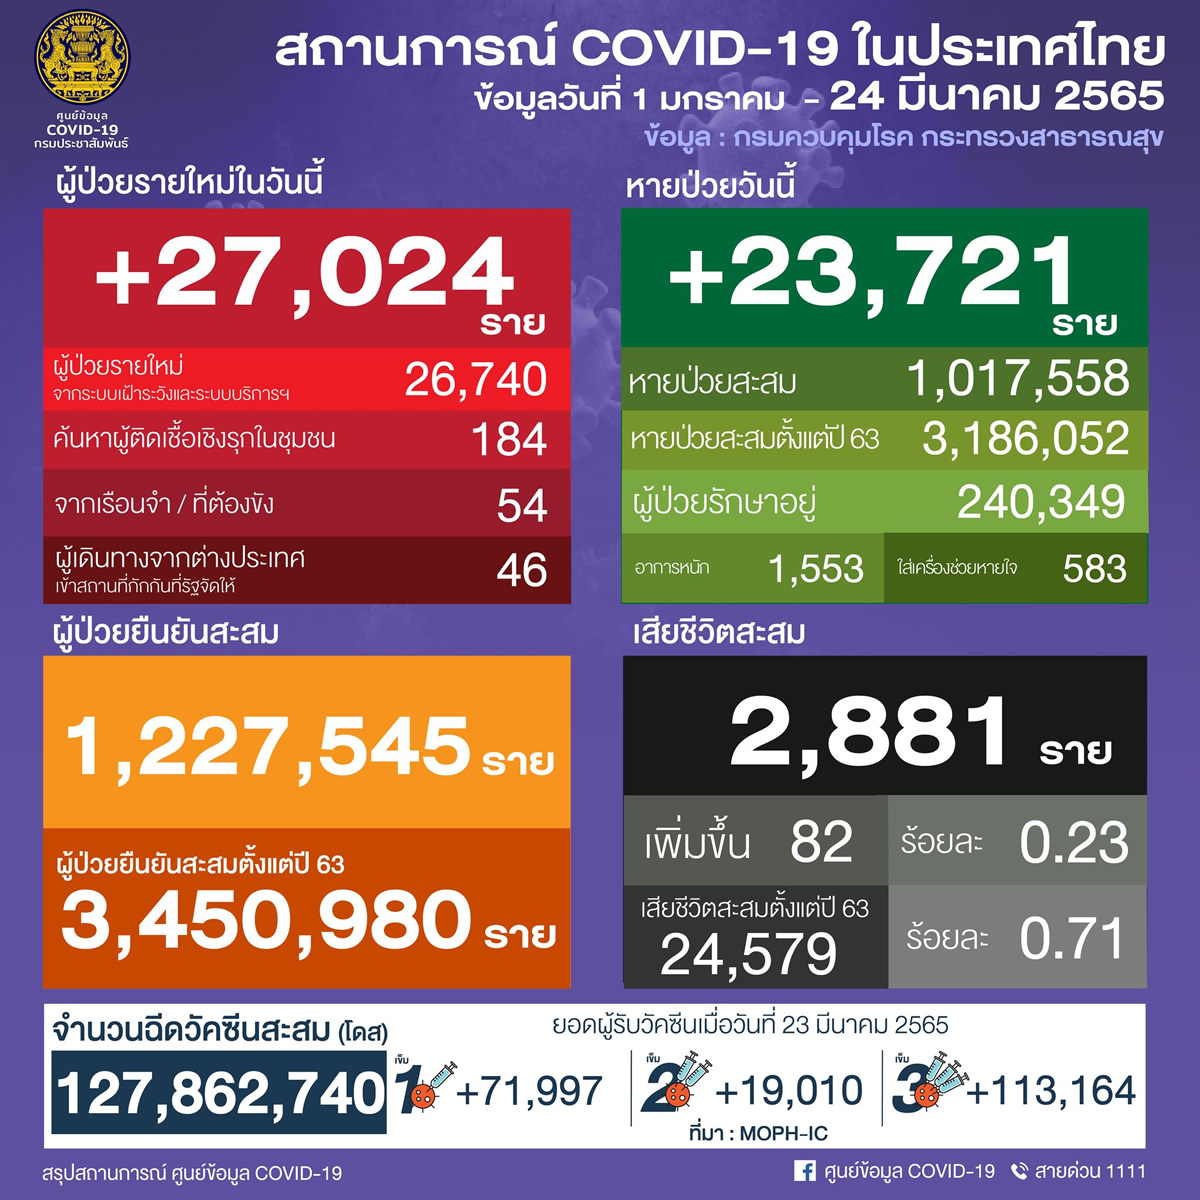 タイ 27,024人陽性 82人死亡／バンコク 3,722人陽性／ナコンシータマラート 1,746人陽性／チョンブリ 1,341人陽性［2022年3月24日発表］